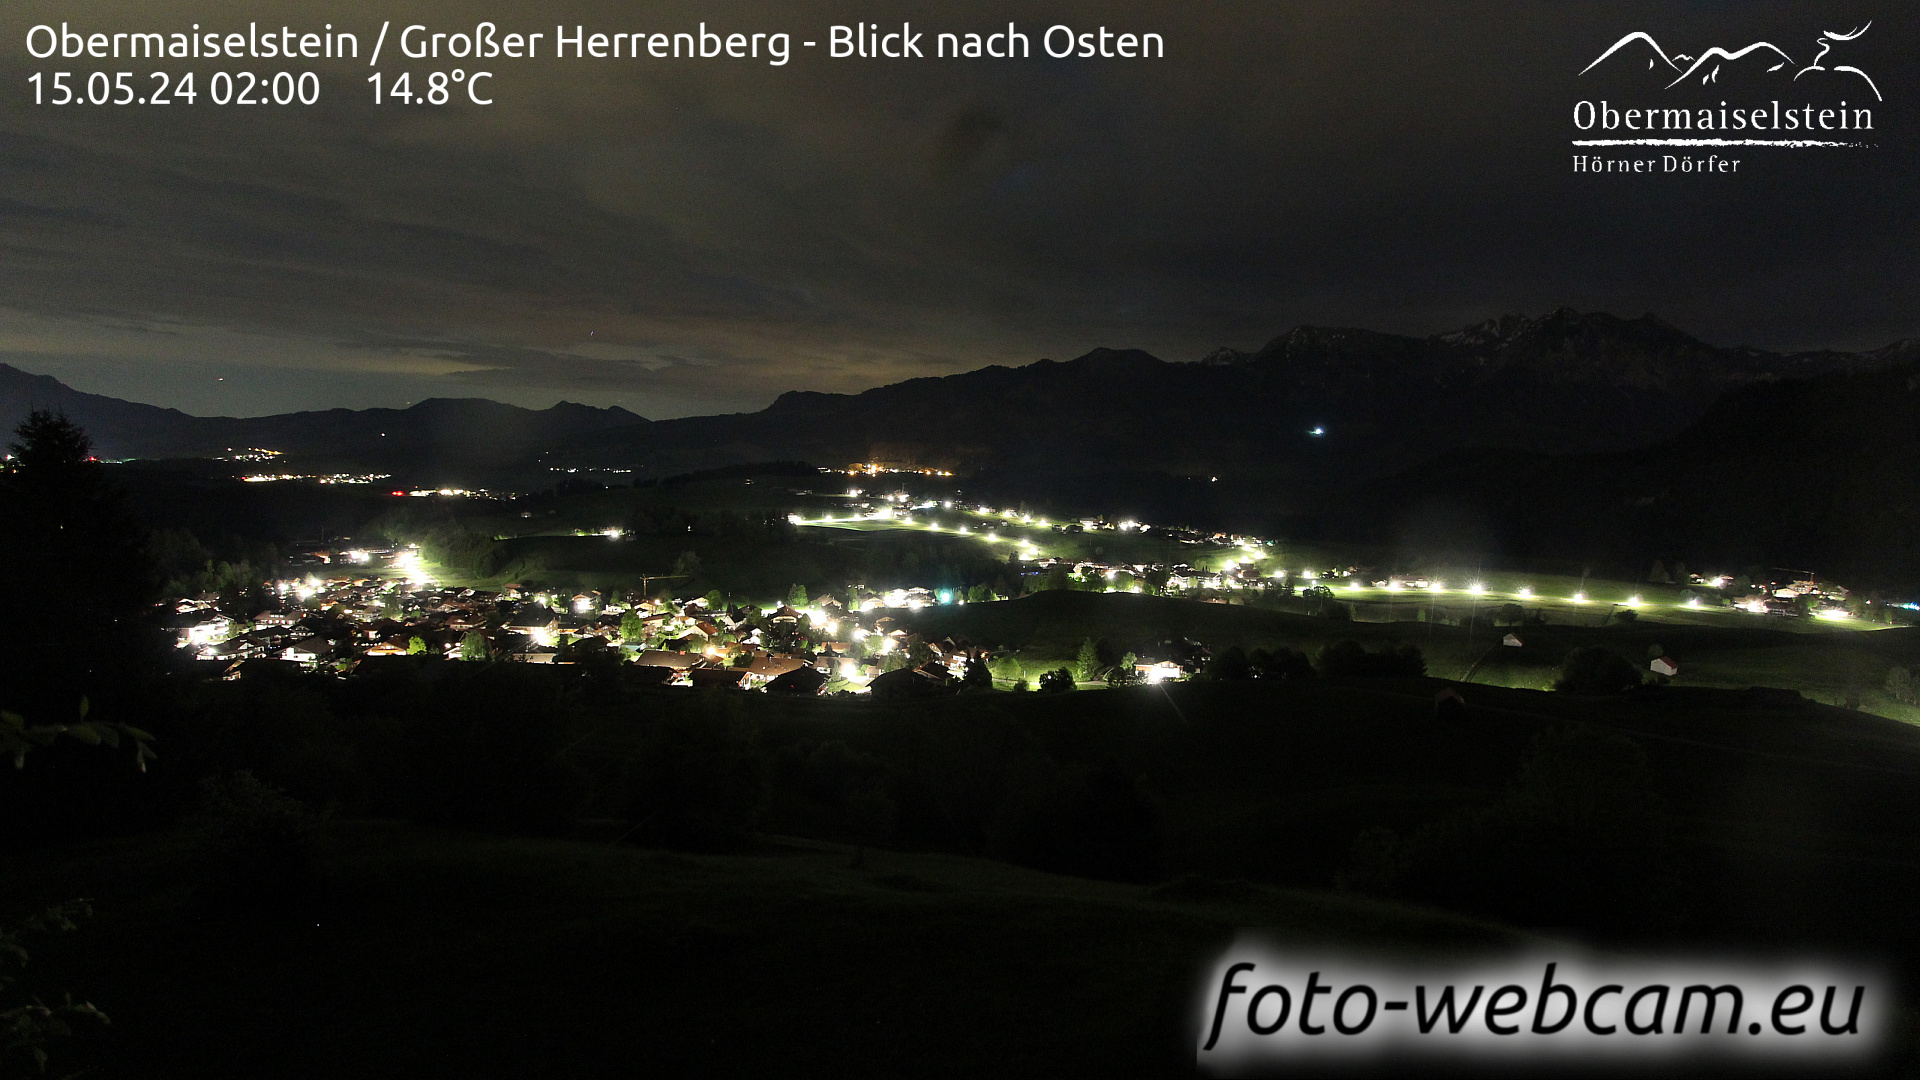 Obermaiselstein Man. 02:04